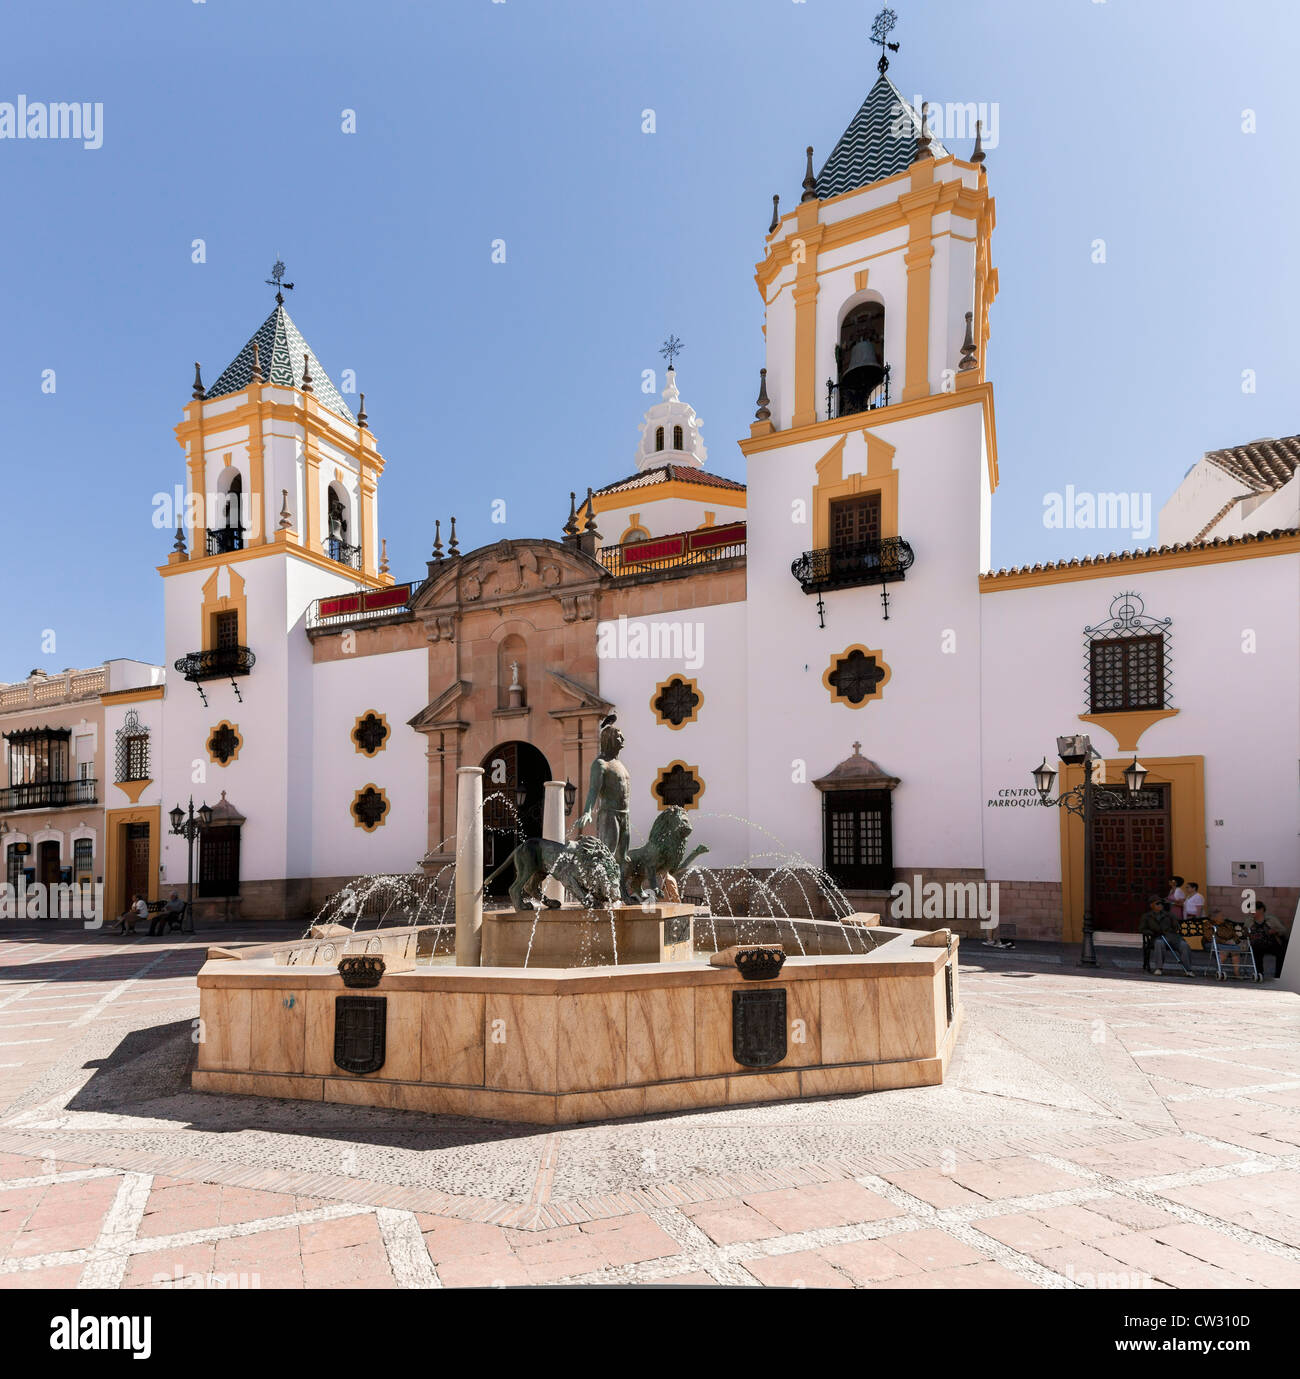 Ronda, Andalusia, Spagna, Europa. Plaza del Socorro con imponente chiesa edificio e fontana. Foto Stock